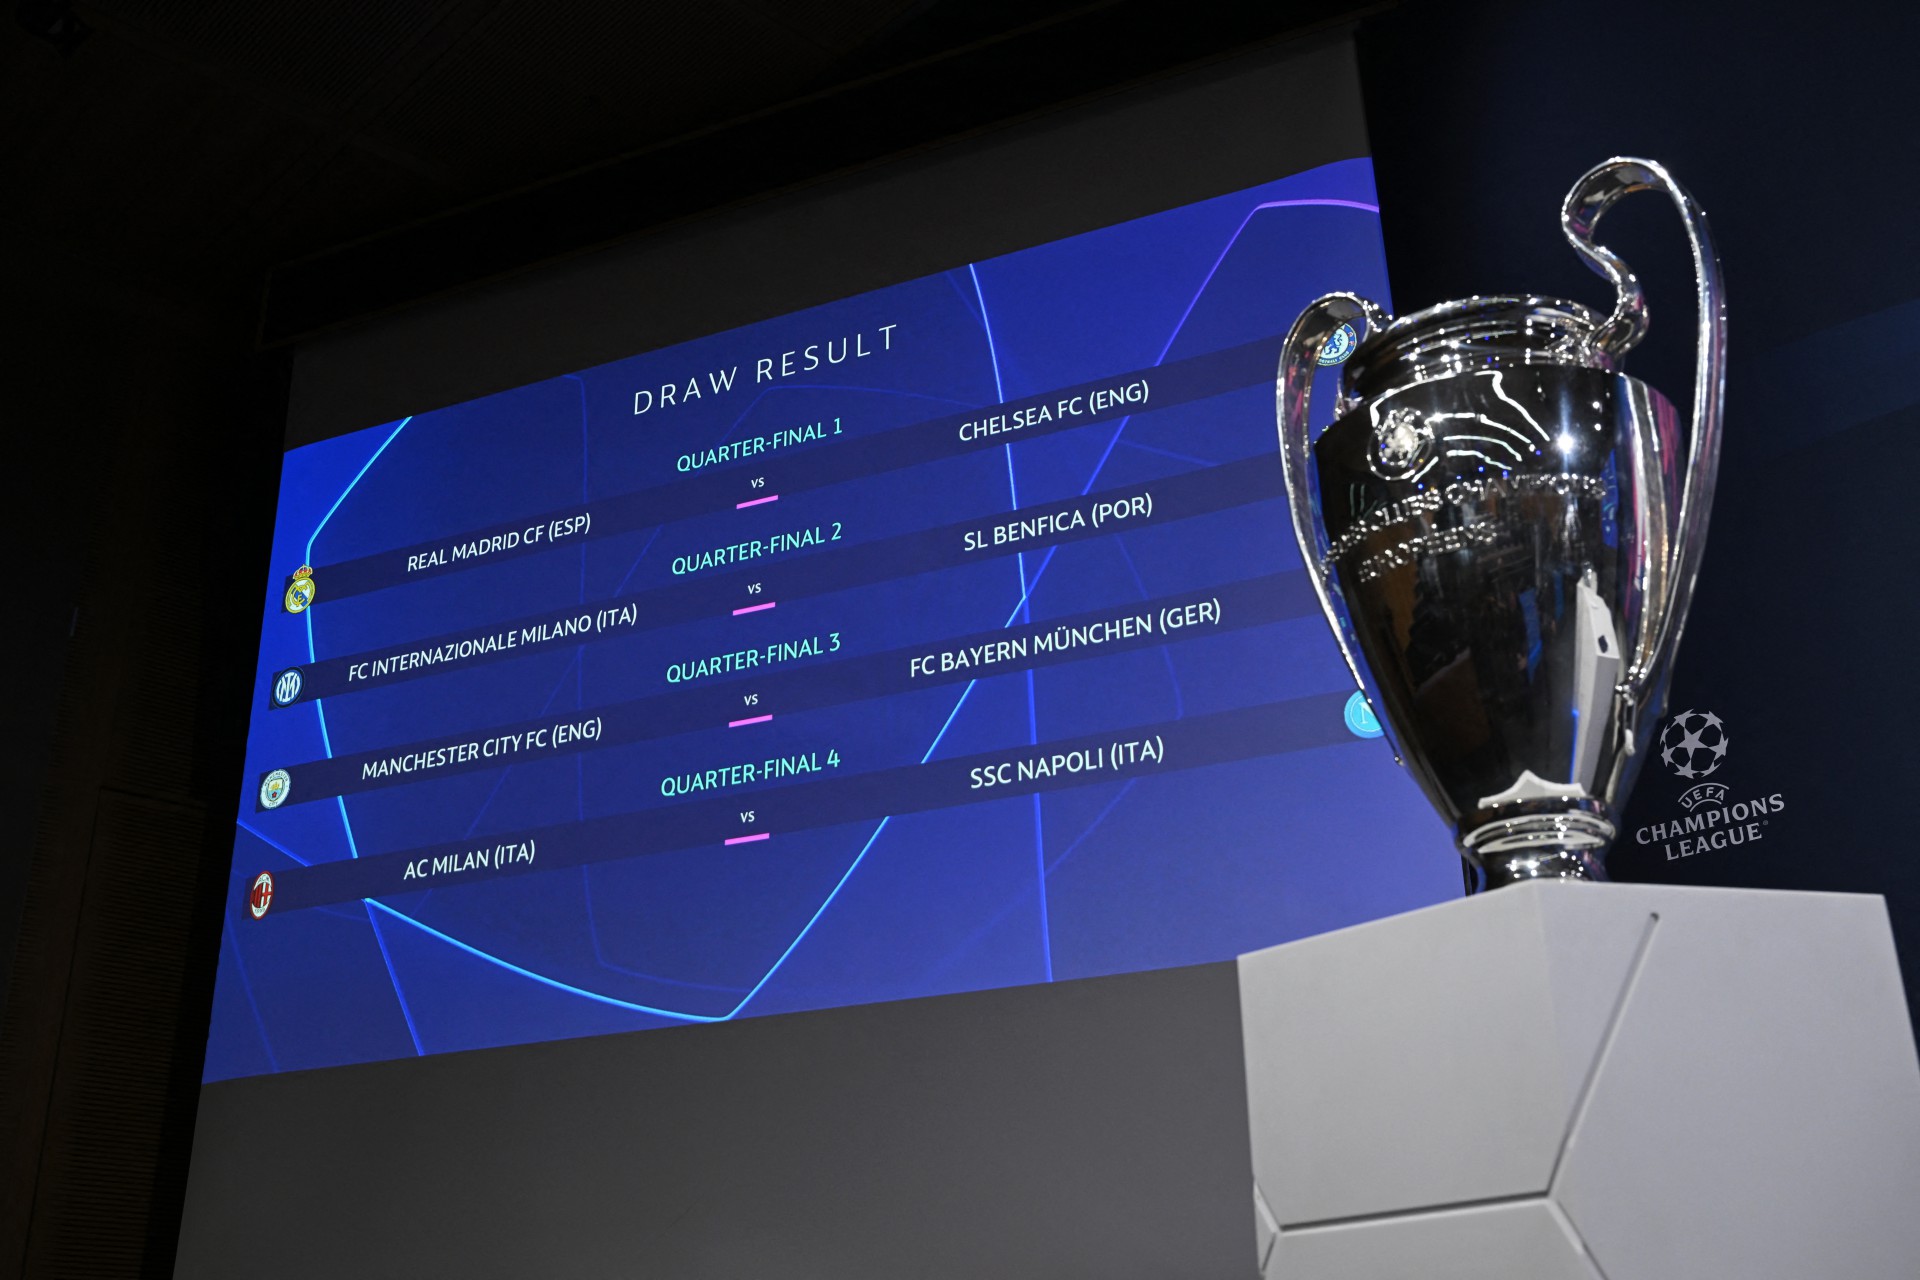 Confrontos das quartas da Champions League 2019-2020 são sorteados